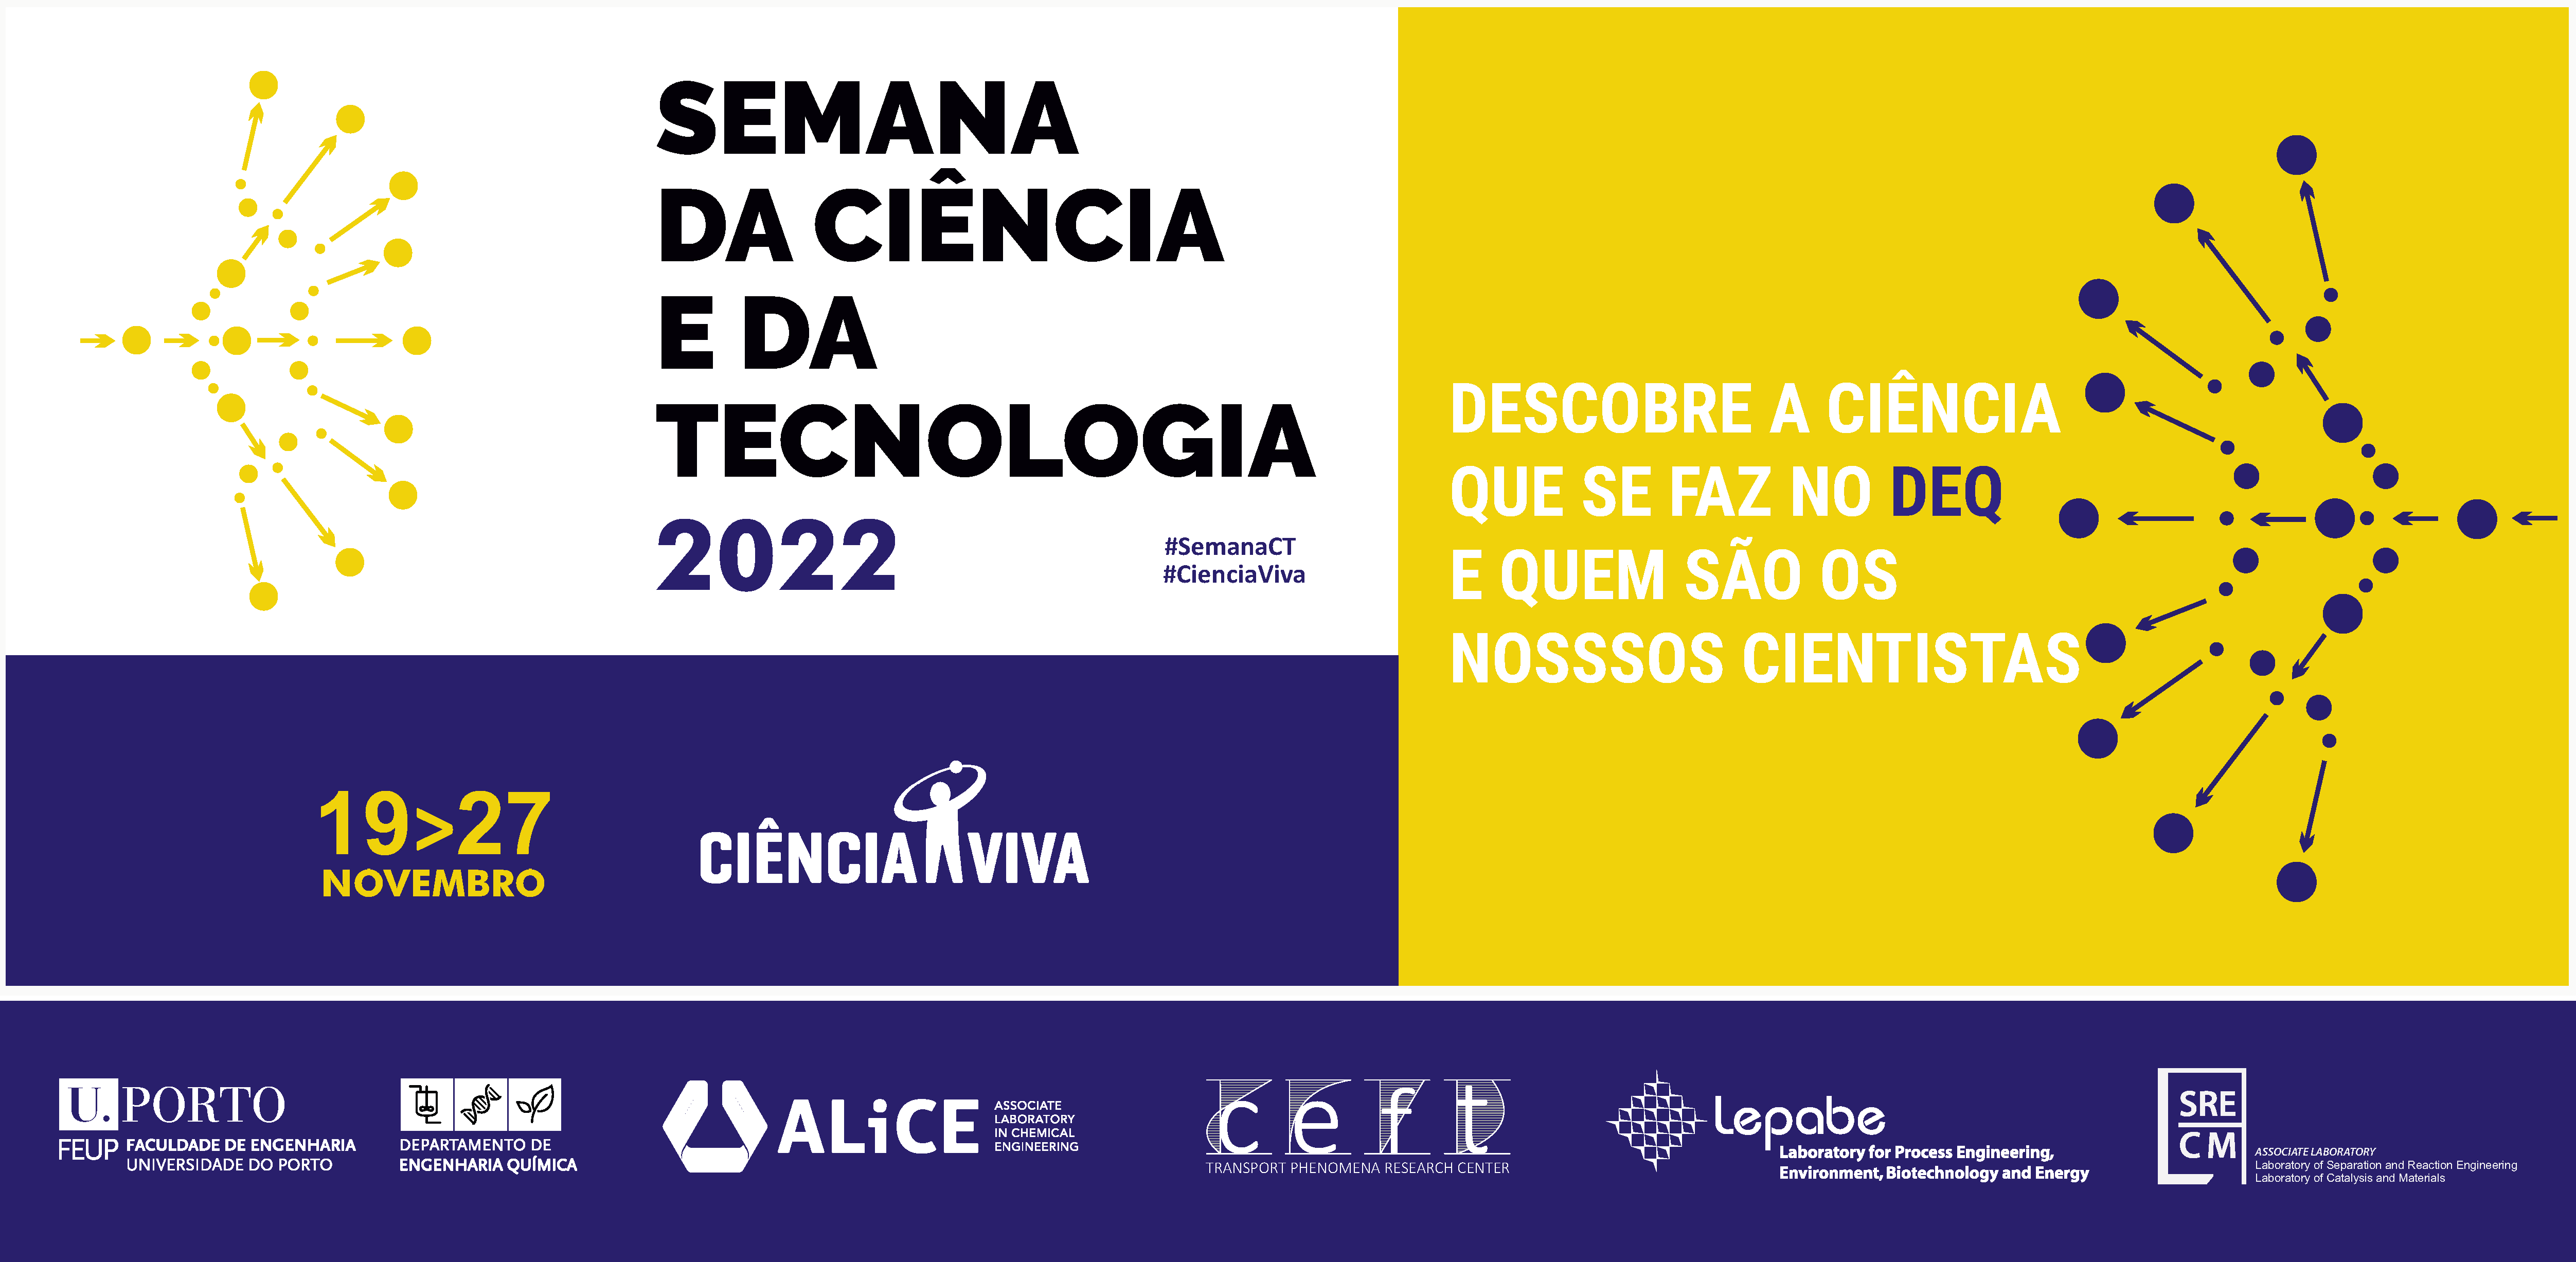 Semana da Ciência e Tecnologia 2022